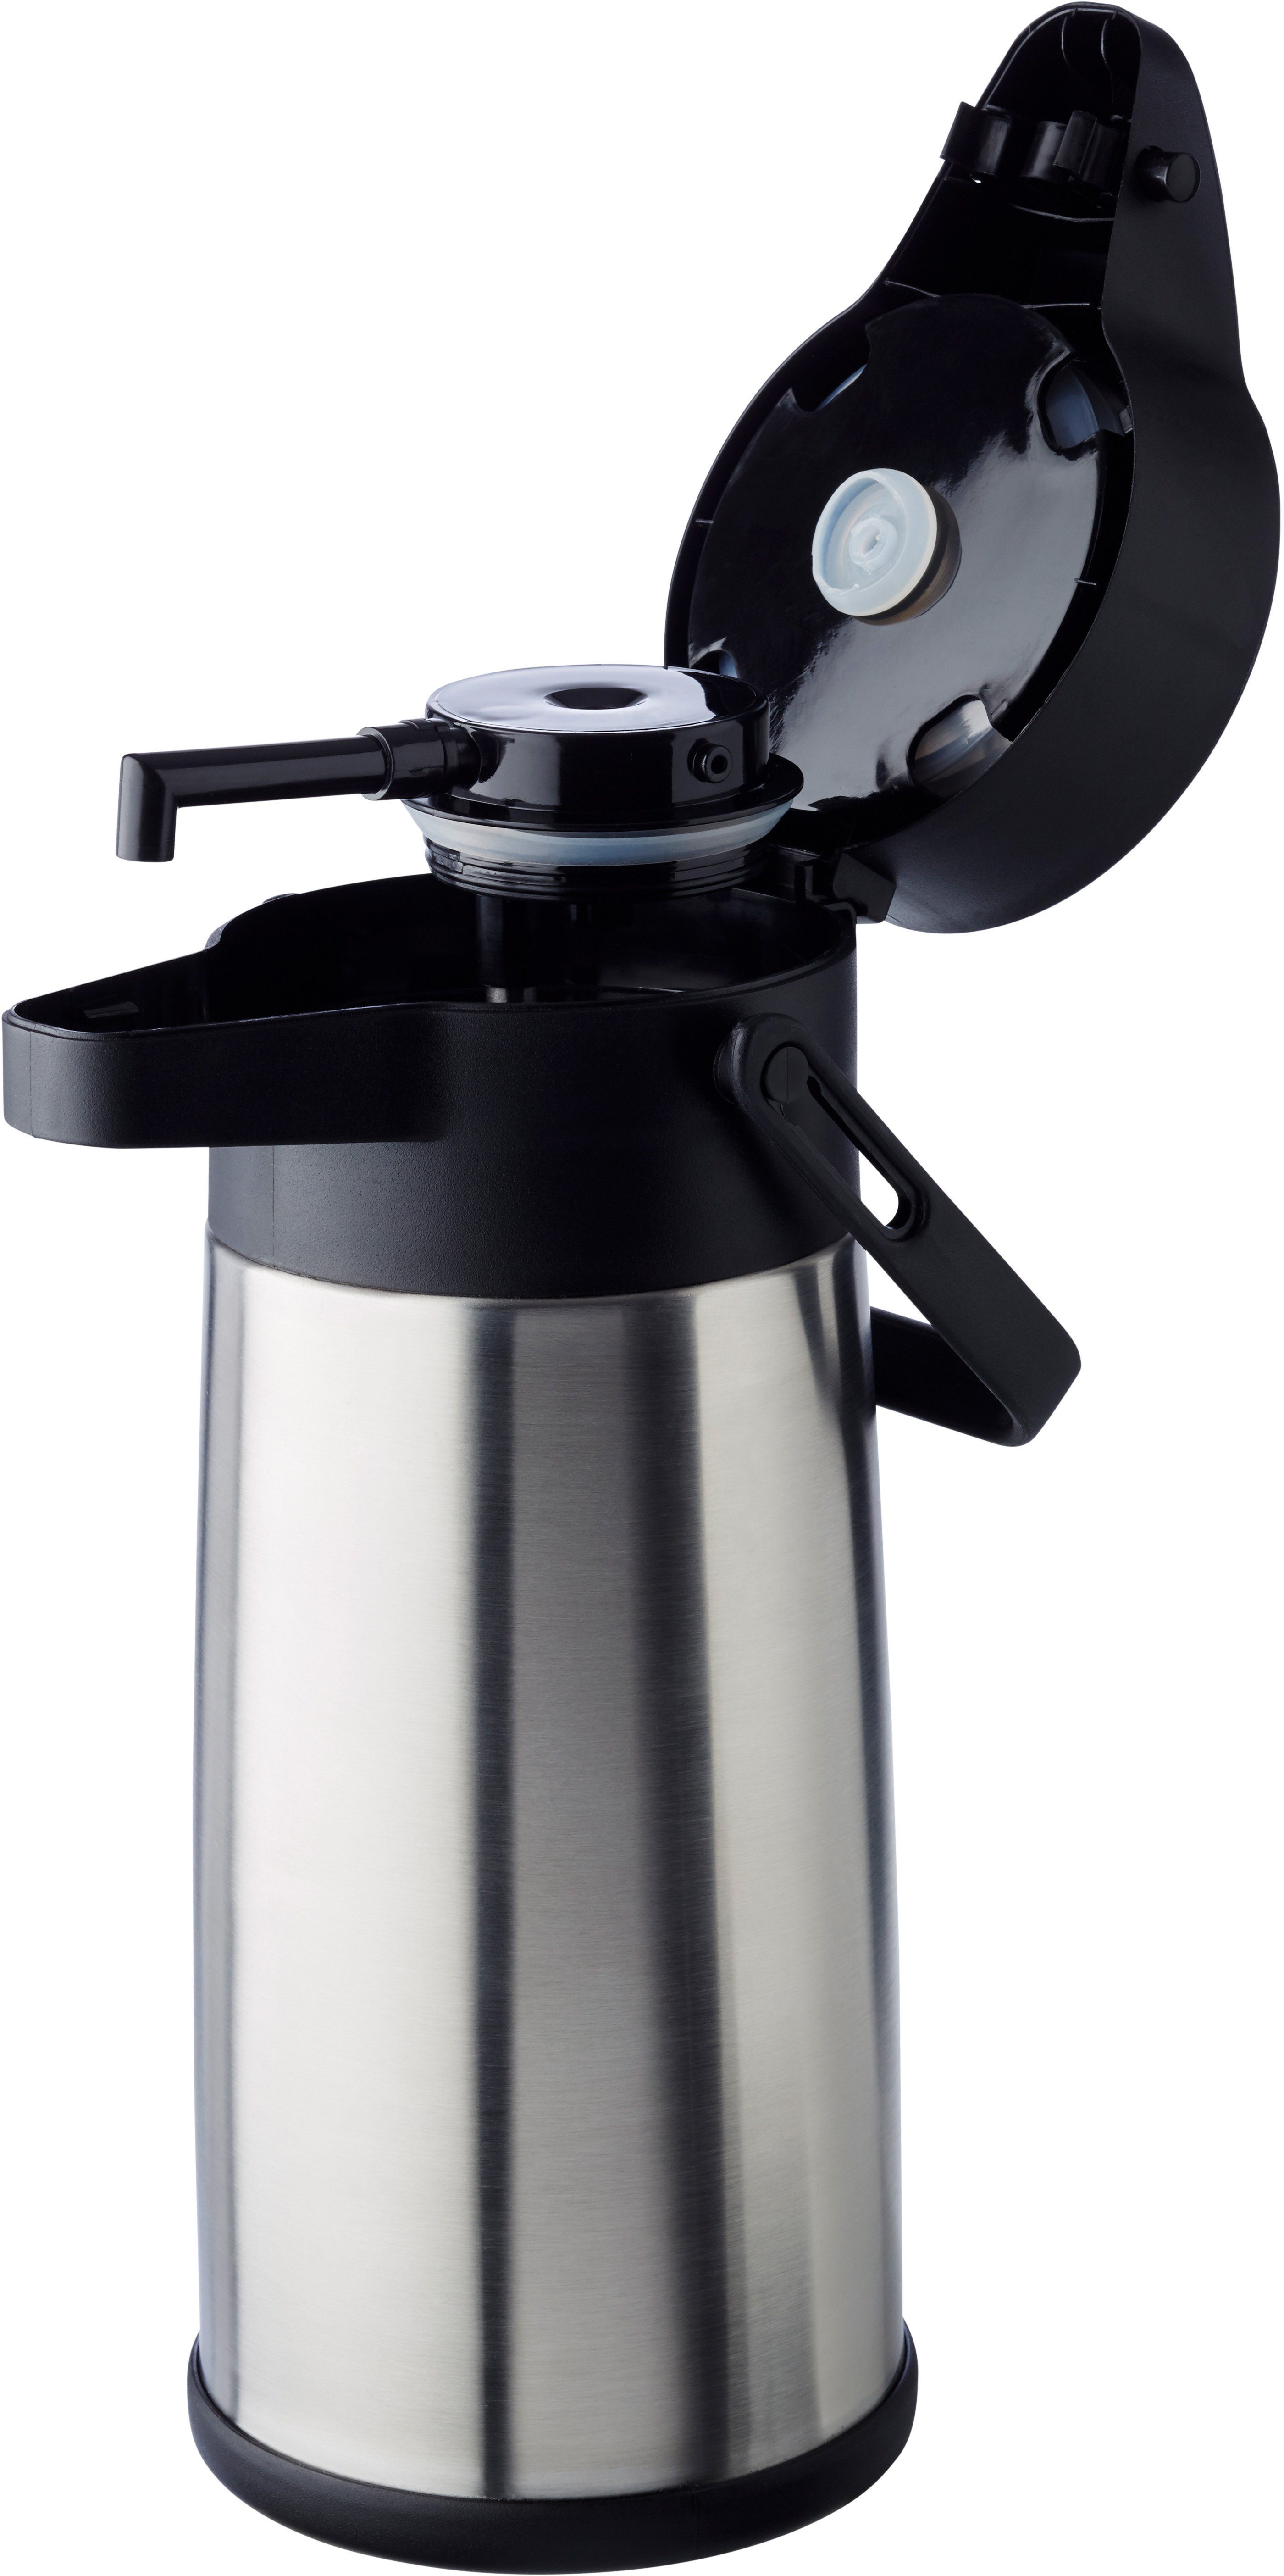 APS Pump-Isolierkanne 2,2 doppelwandige Kaffee, bis Dreh-Pumpknopf, 17 für Tassen Isolierung zu l, Budget